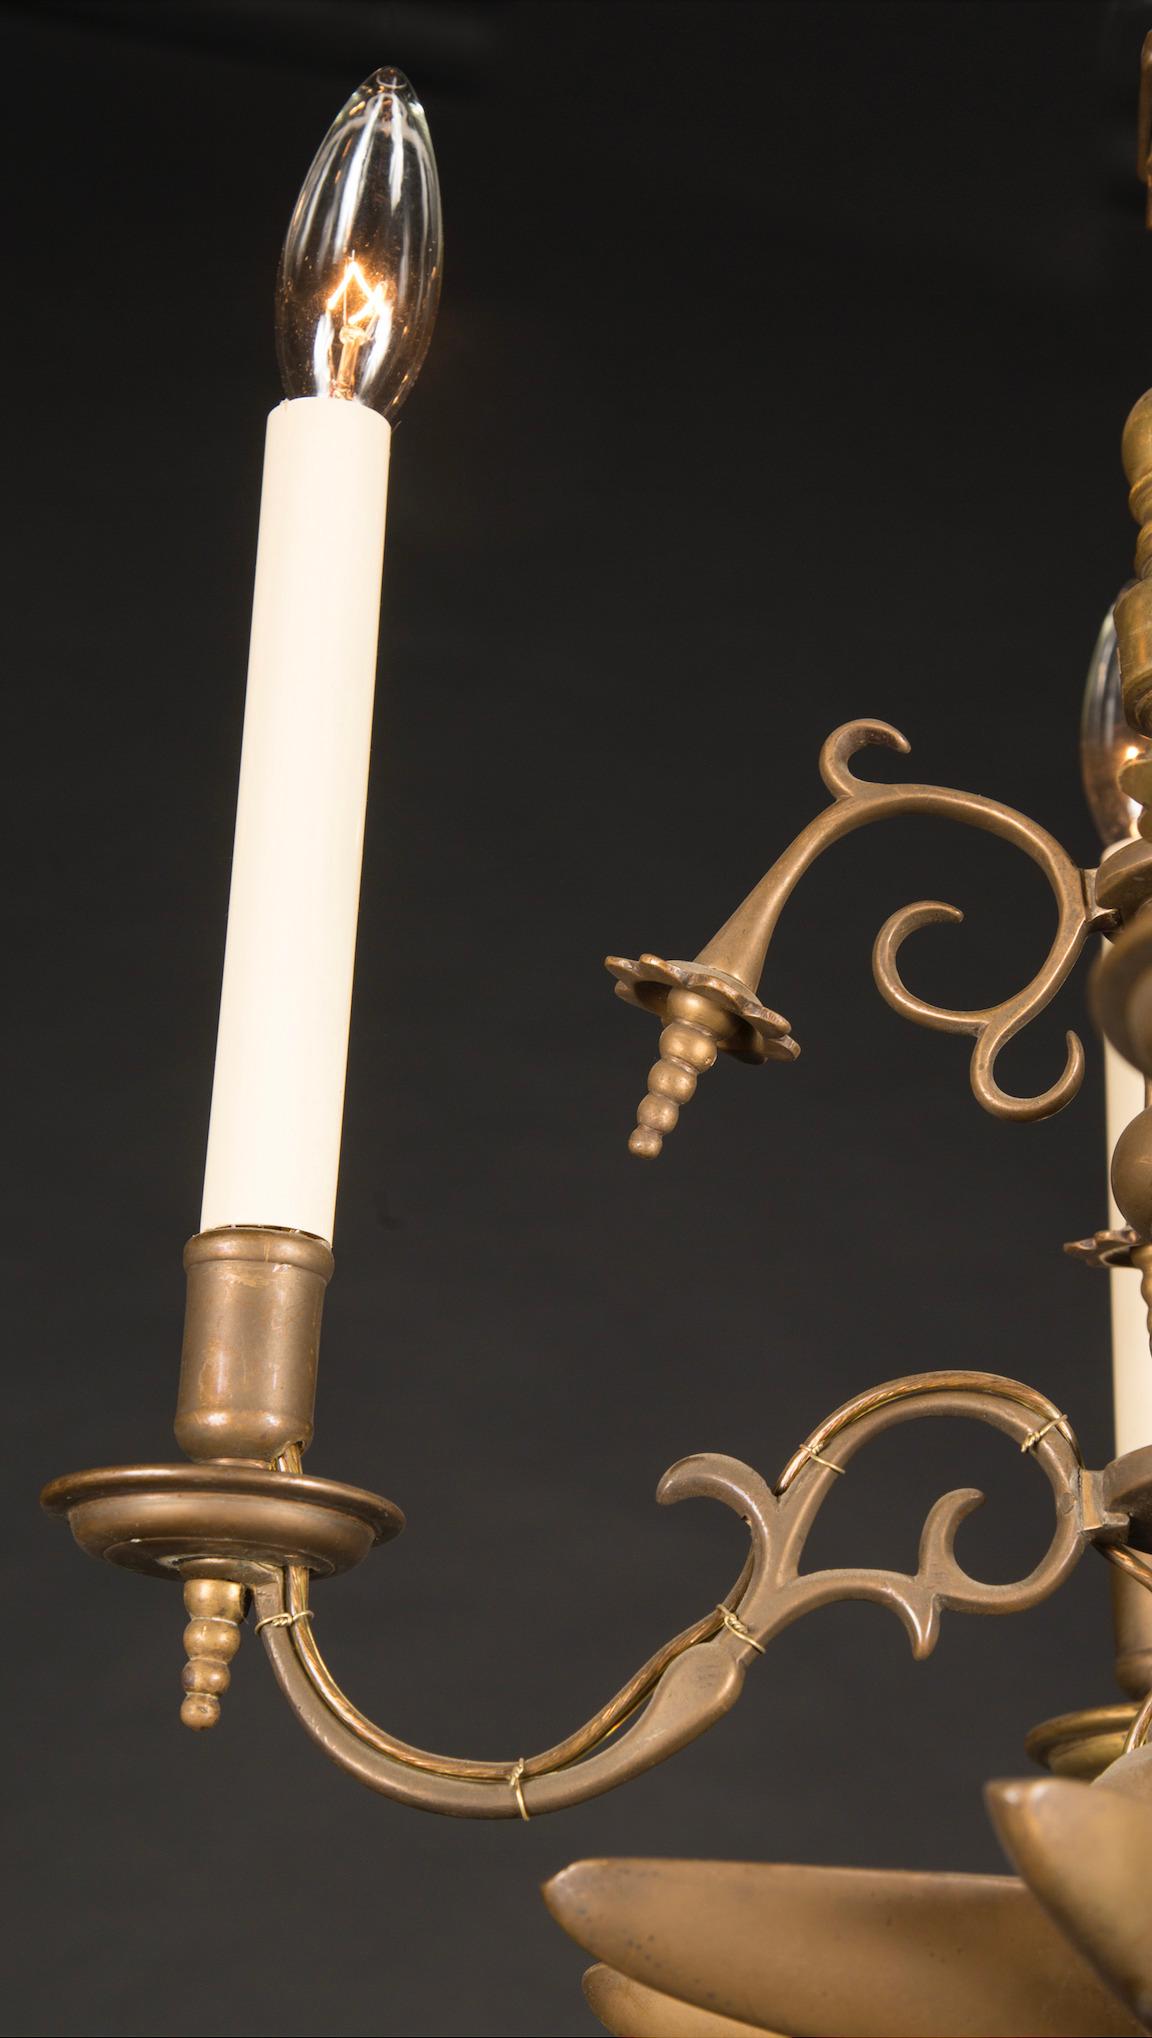 Ce lustre français en laiton date du XIXe siècle et présente une myriade de détails uniques. En particulier, la tige supérieure ressemble à une lame de scie, s'étendant du plafond aux éléments situés en dessous. Le bas de la pièce est orné d'une